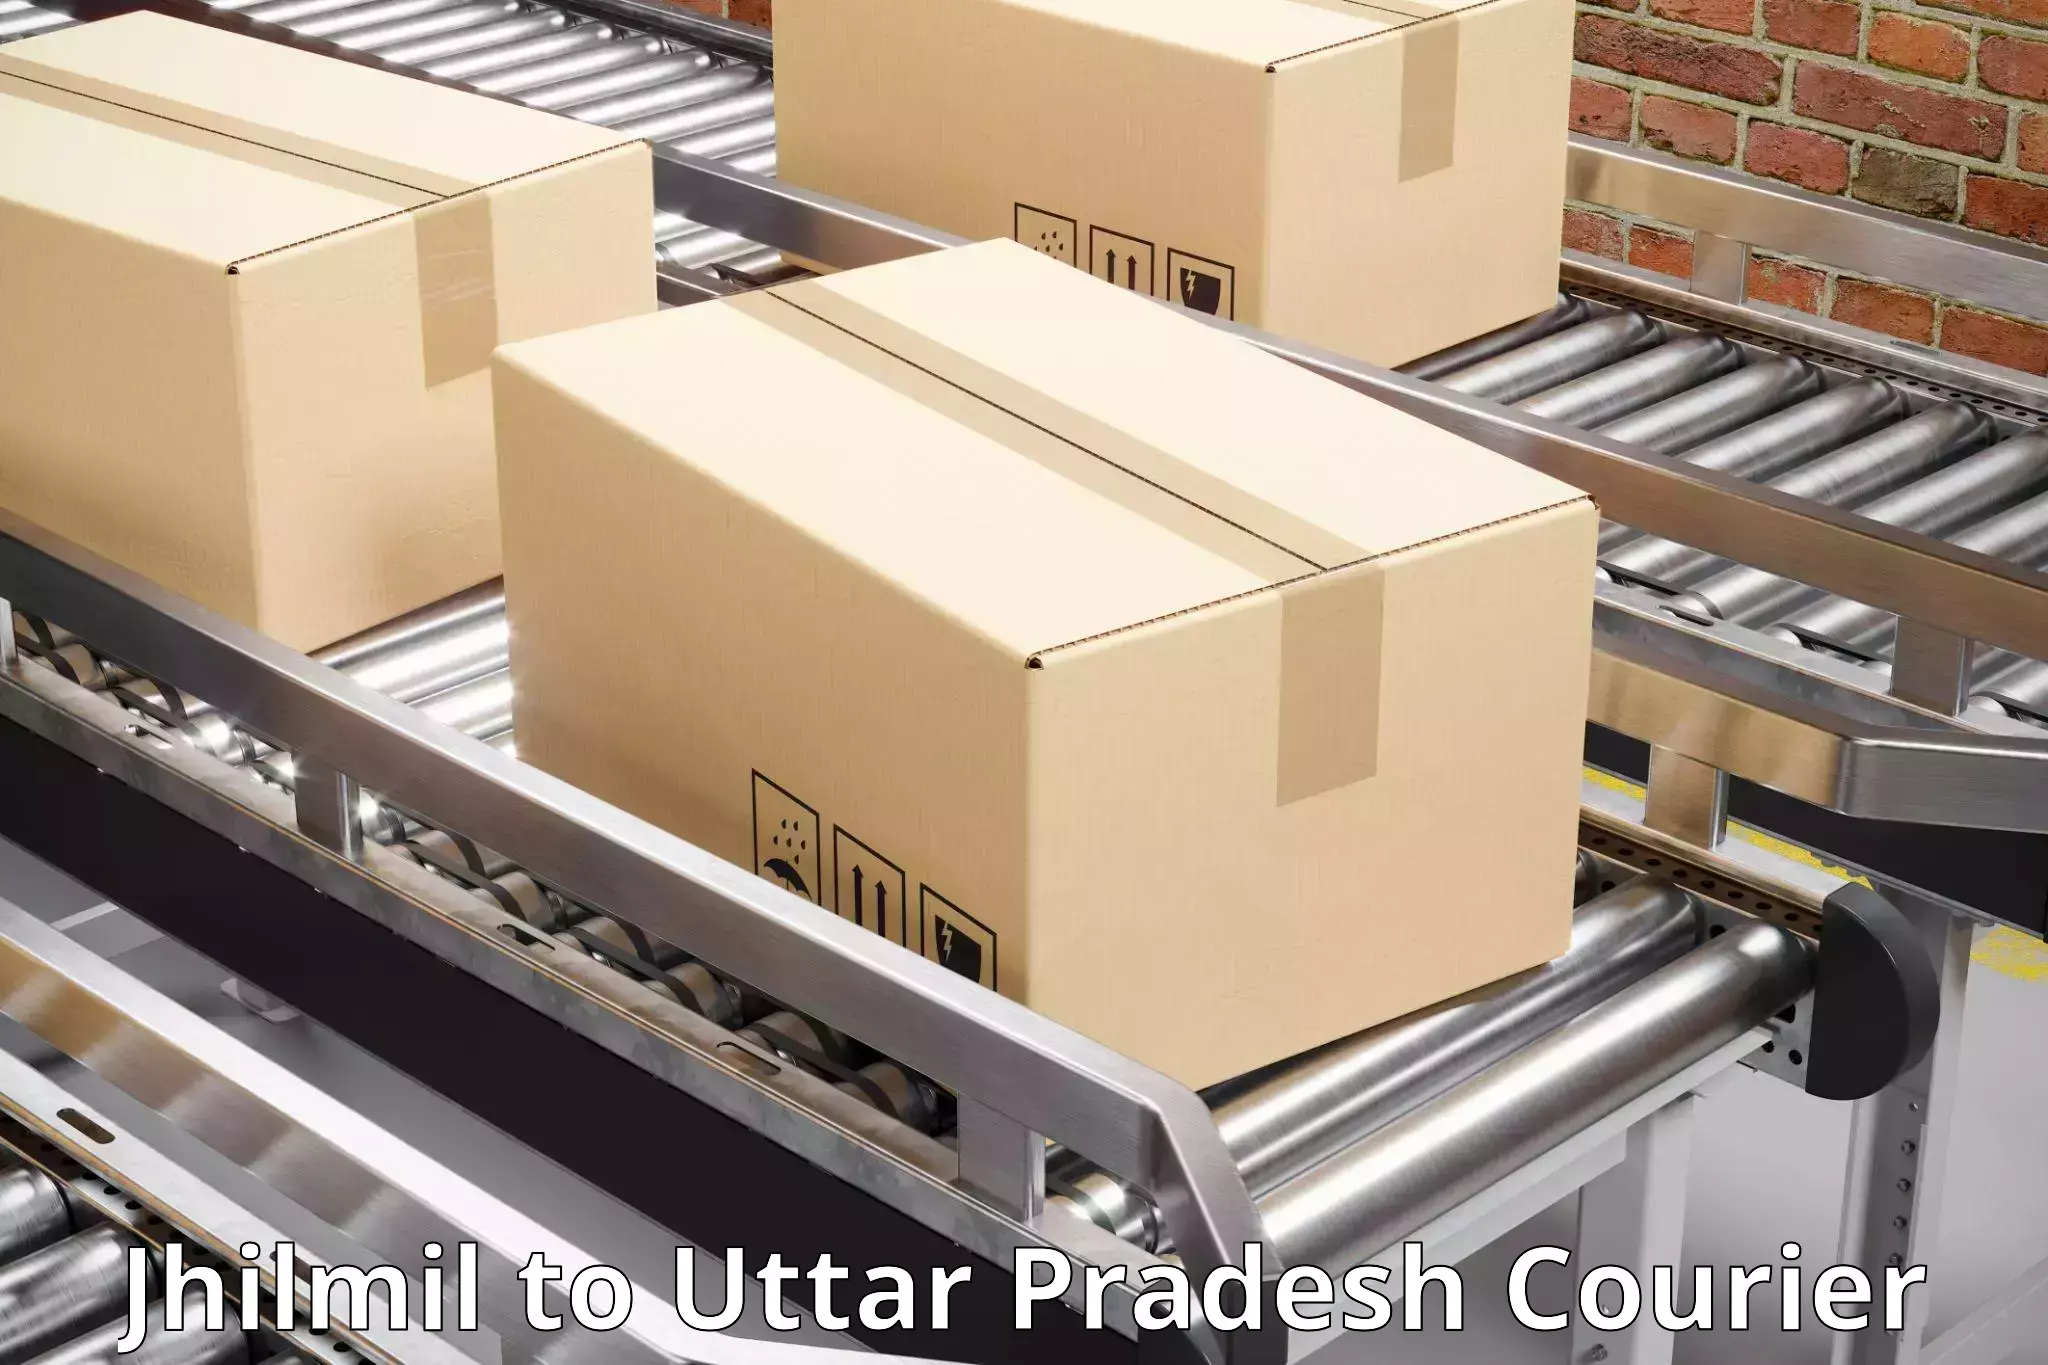 Fast-track shipping solutions Jhilmil to Sant Kabir Nagar